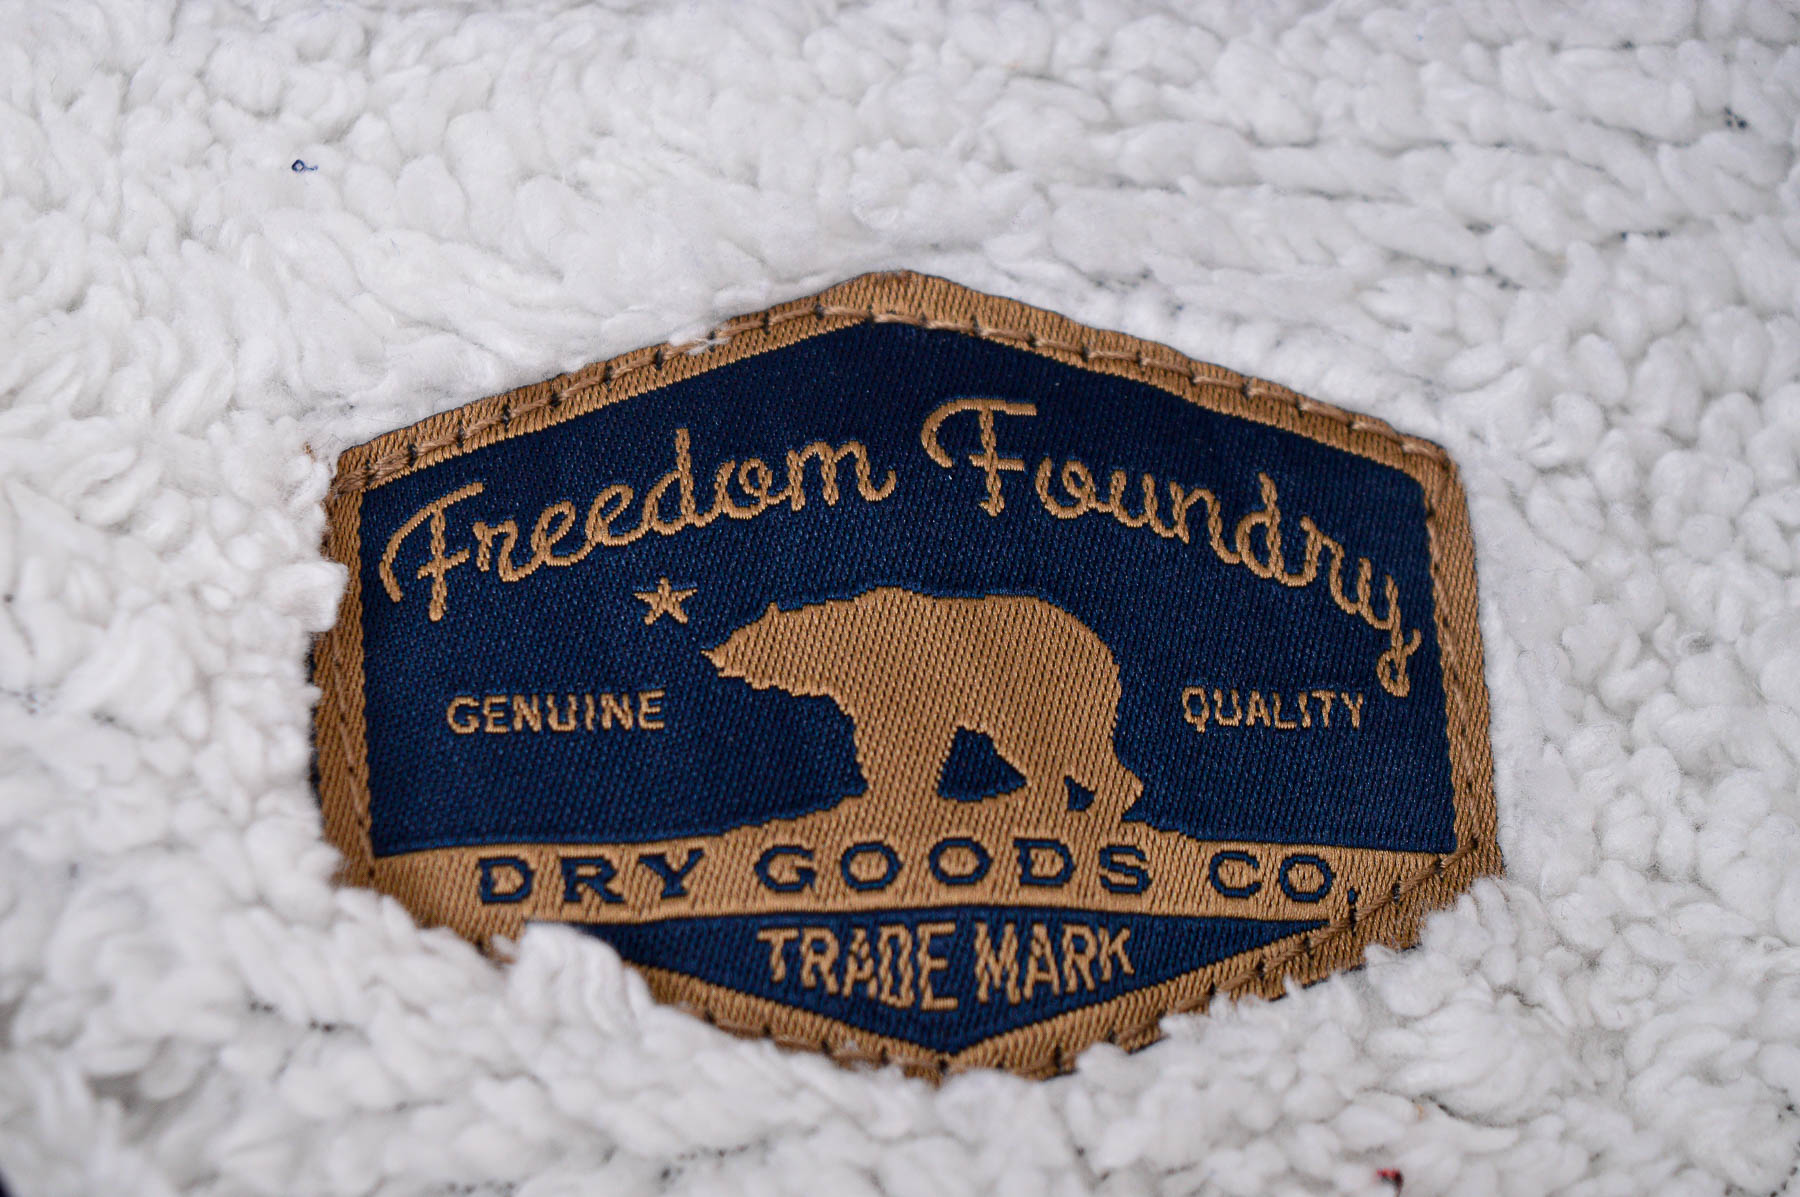 Ανδρικό ρούχο απο πολικό υφασμα - Freedom Foundry - 2